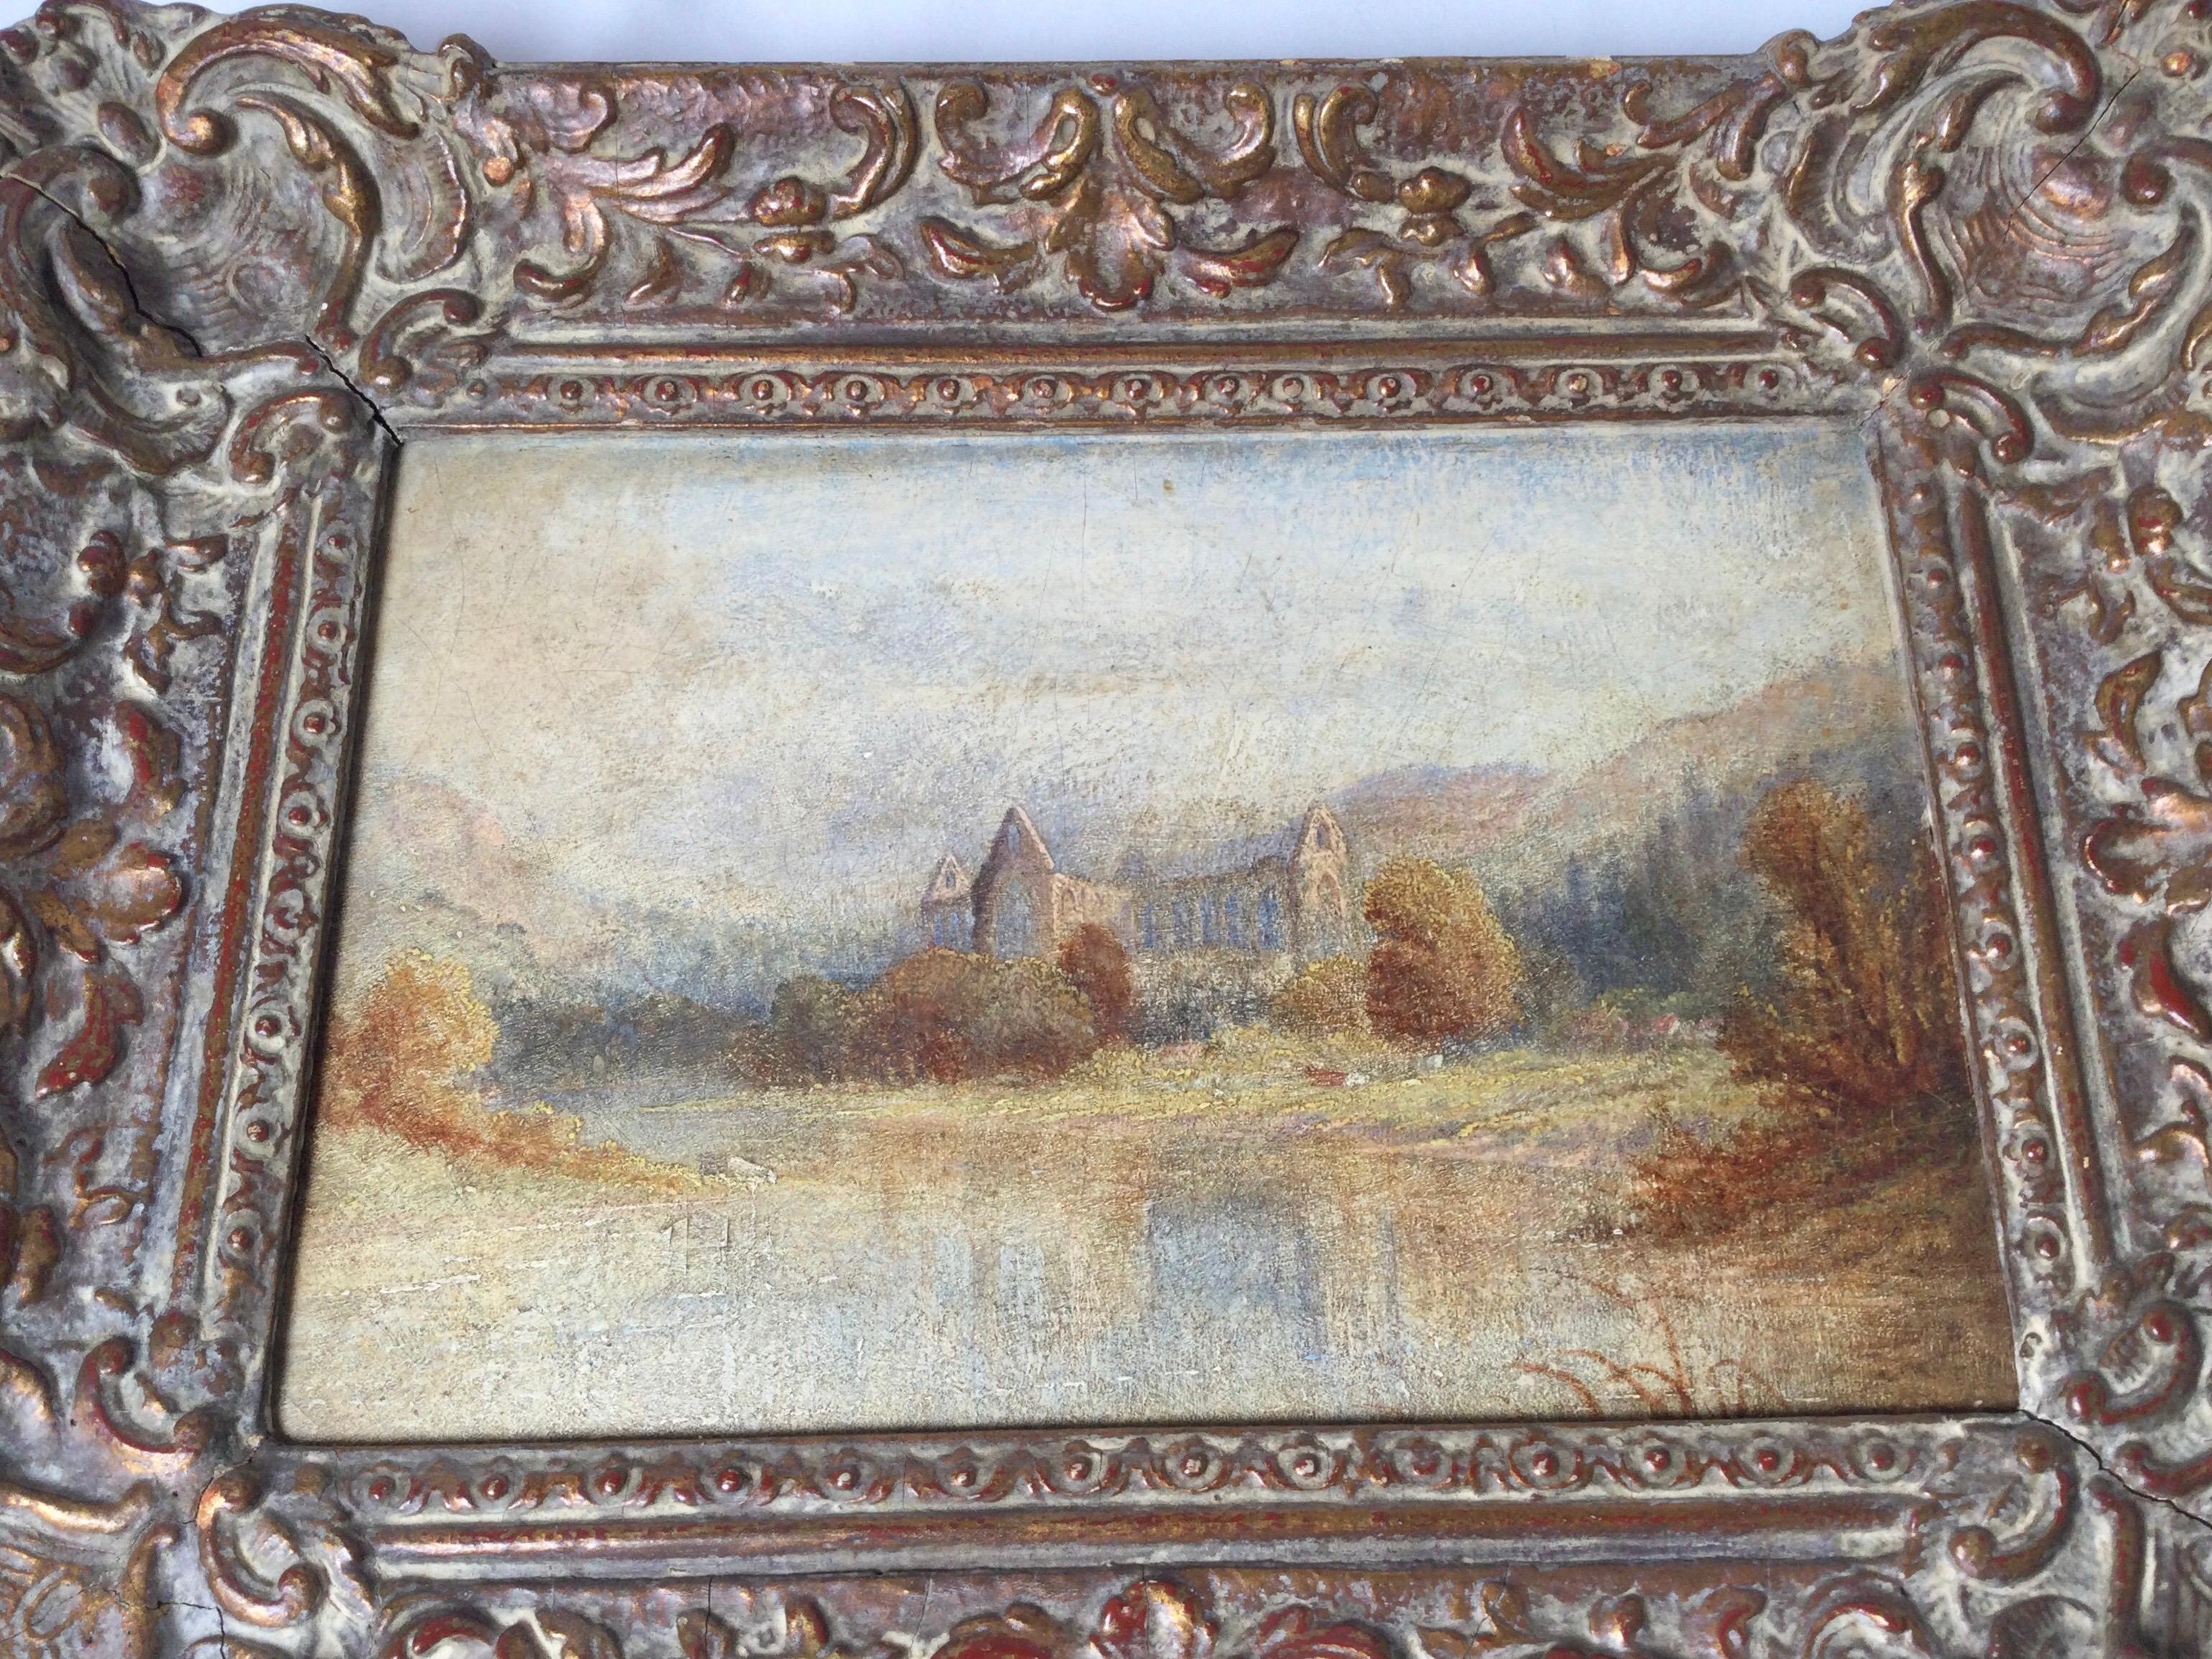 Ein impressionistisches Gemälde aus dem frühen 20. Jahrhundert mit einer europäischen Kirche in einem frühen Rahmen. Die weiche Farbpalette des Gemäldes, gepaart mit dem perfekten Rahmen aus der gleichen Zeit, ist wahrscheinlich original.